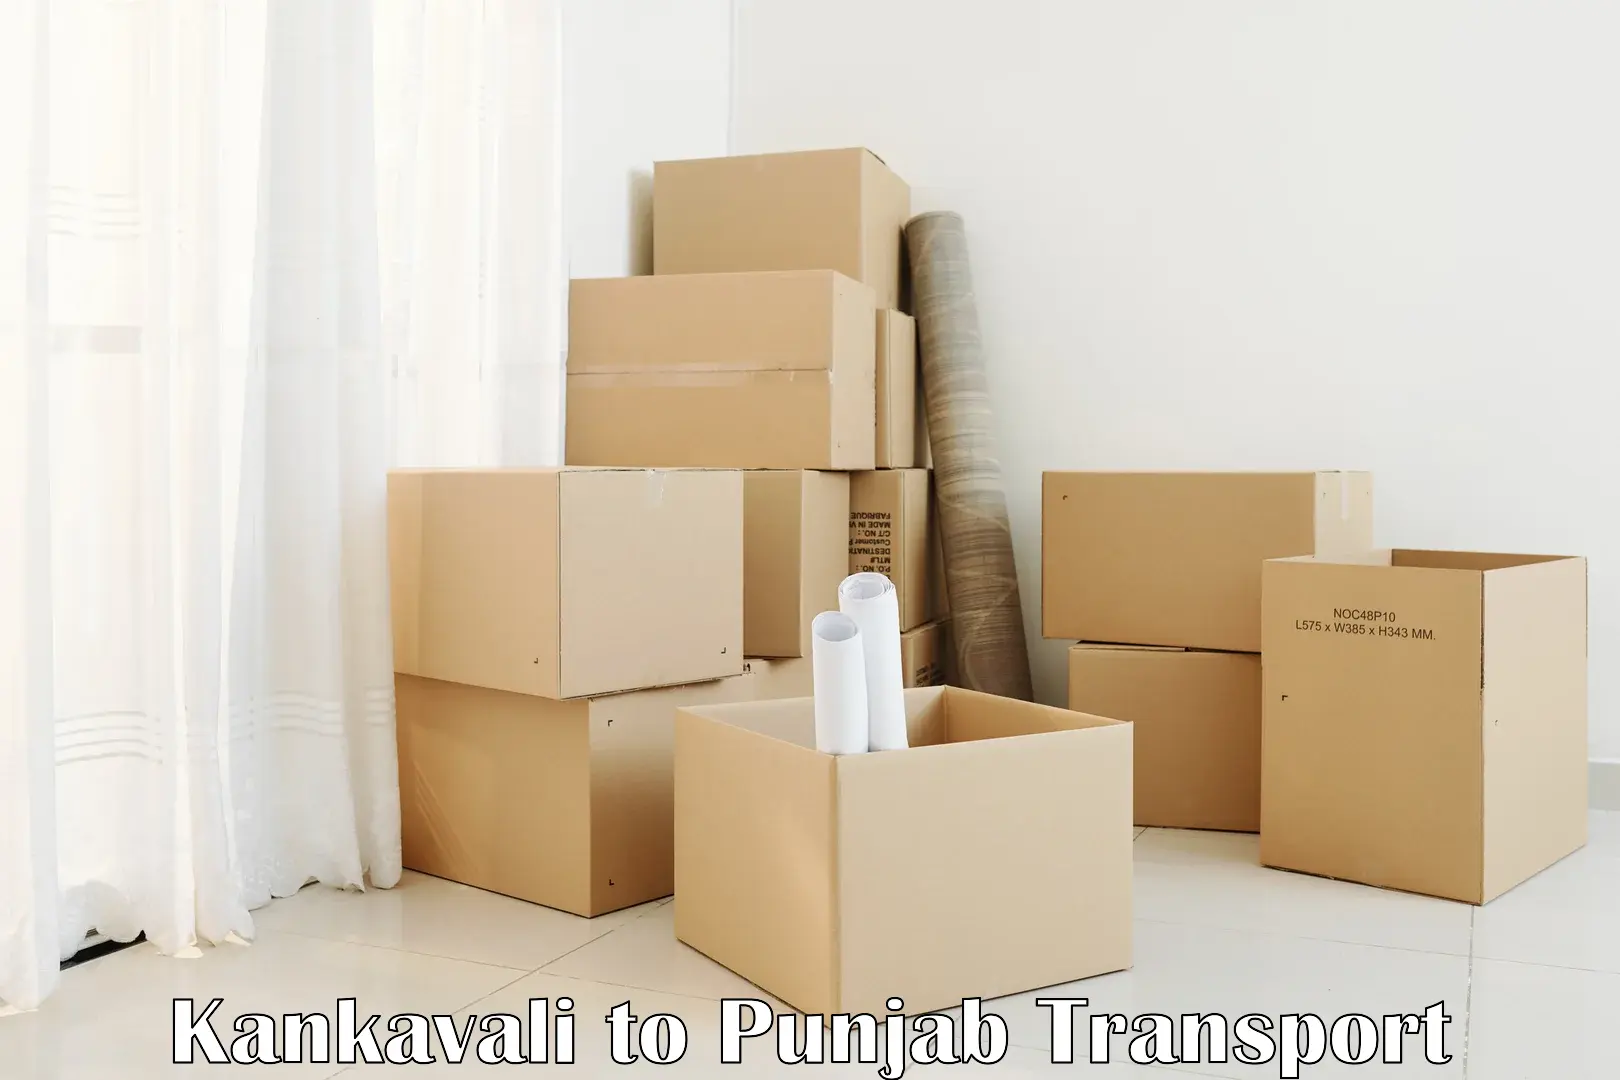 Furniture transport service Kankavali to Punjab